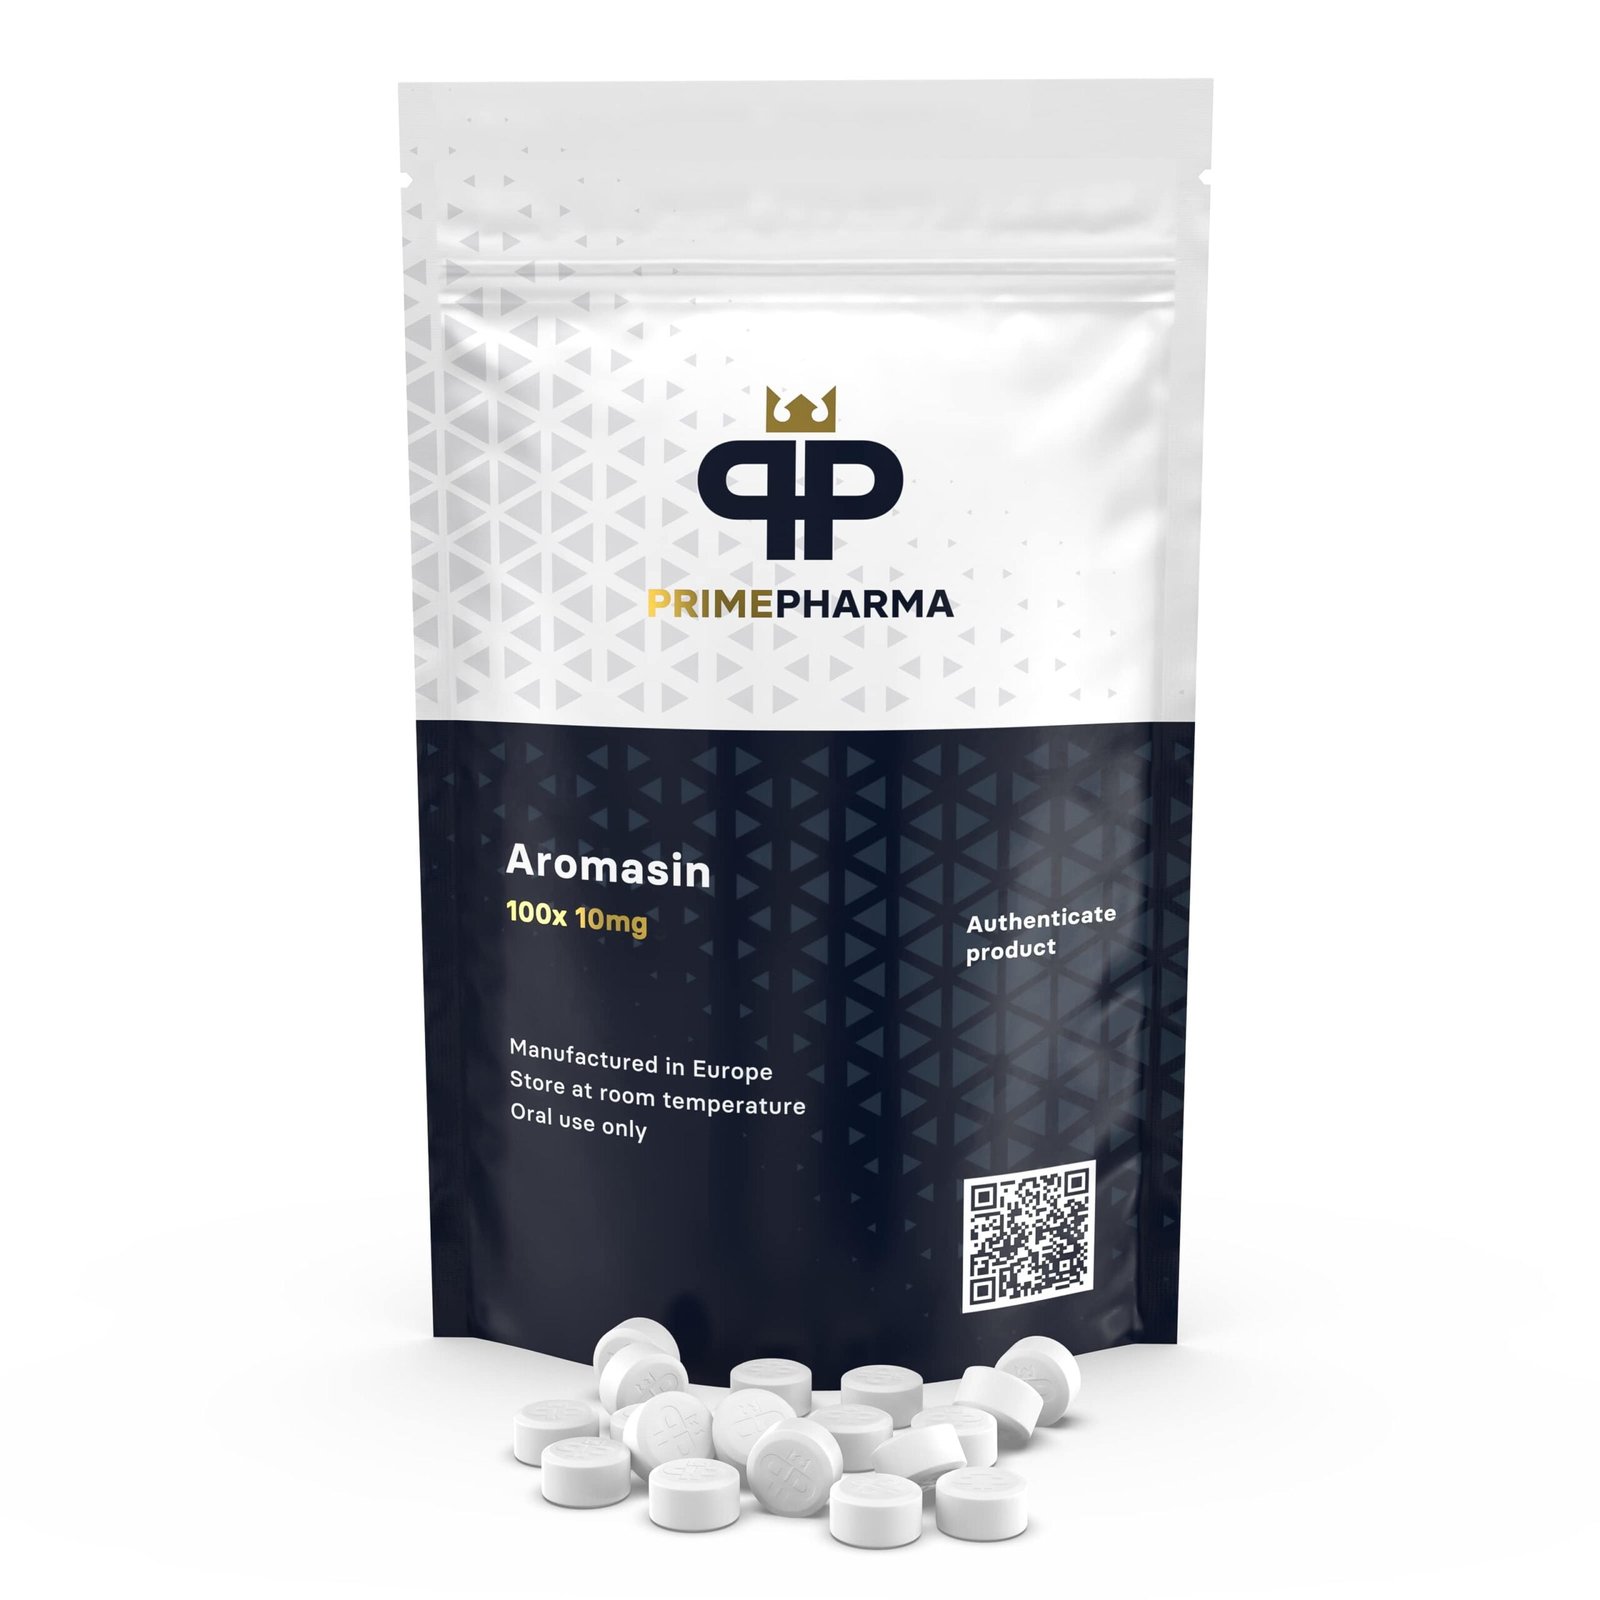 Prime Pharma Aromasin 10